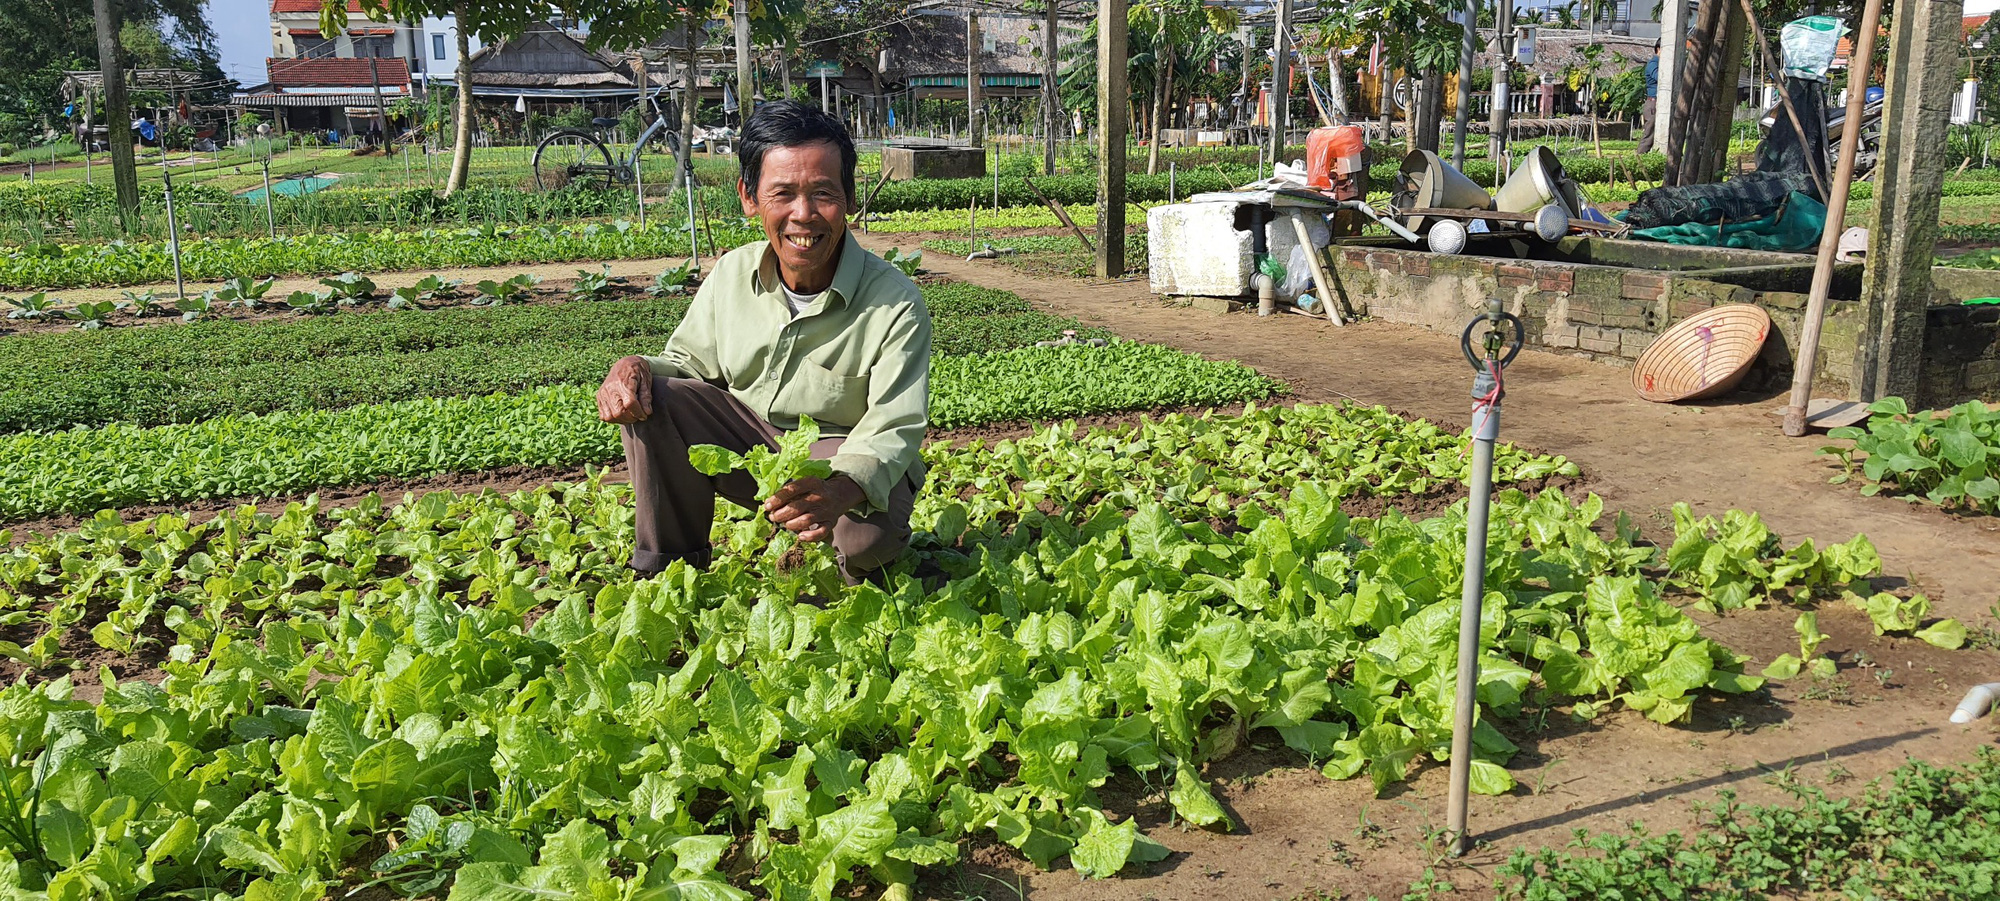 Quảng Nam: Nông dân trồng rau ở Hội An khá giả nhờ được nguồn vốn ưu đãi tiếp sức - Ảnh 2.